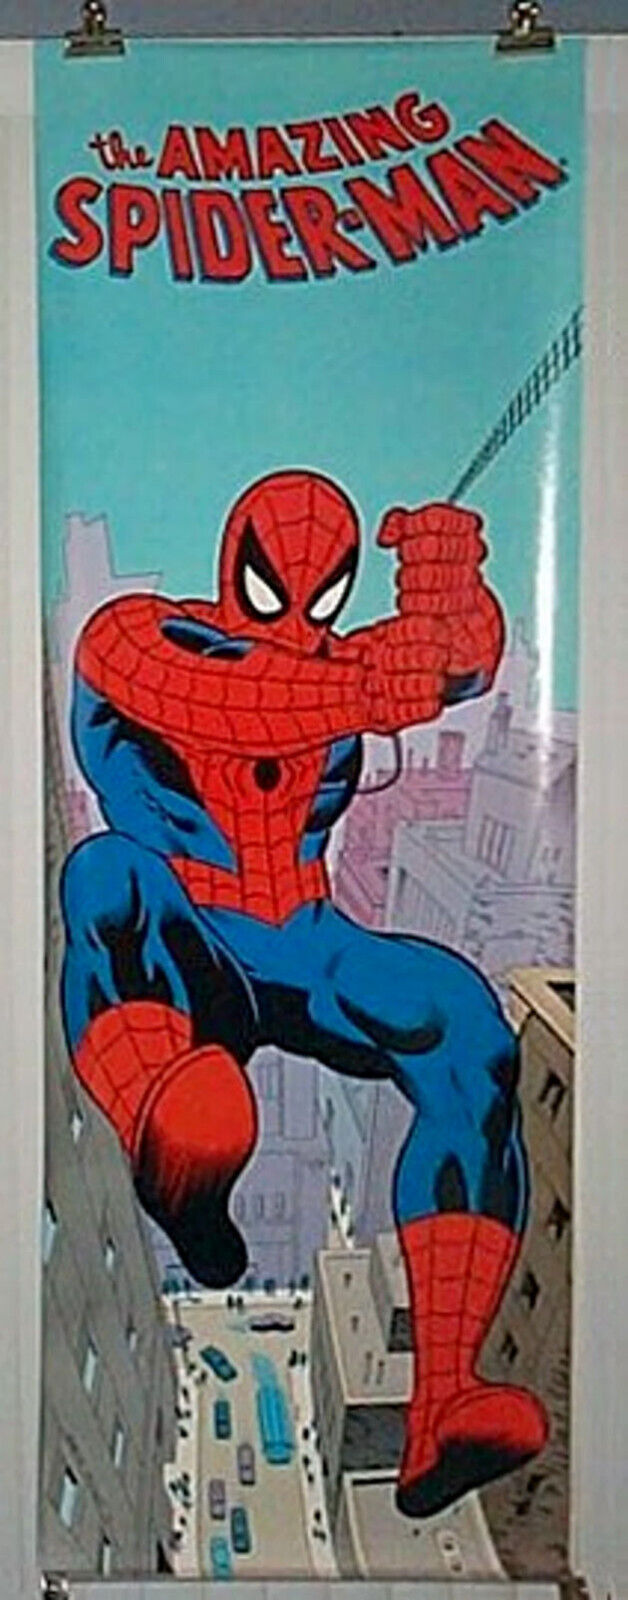 1987 Amazing Spider-Man DOOR poster:Marvel Comics 74x26 Vintage Spiderman pin-up